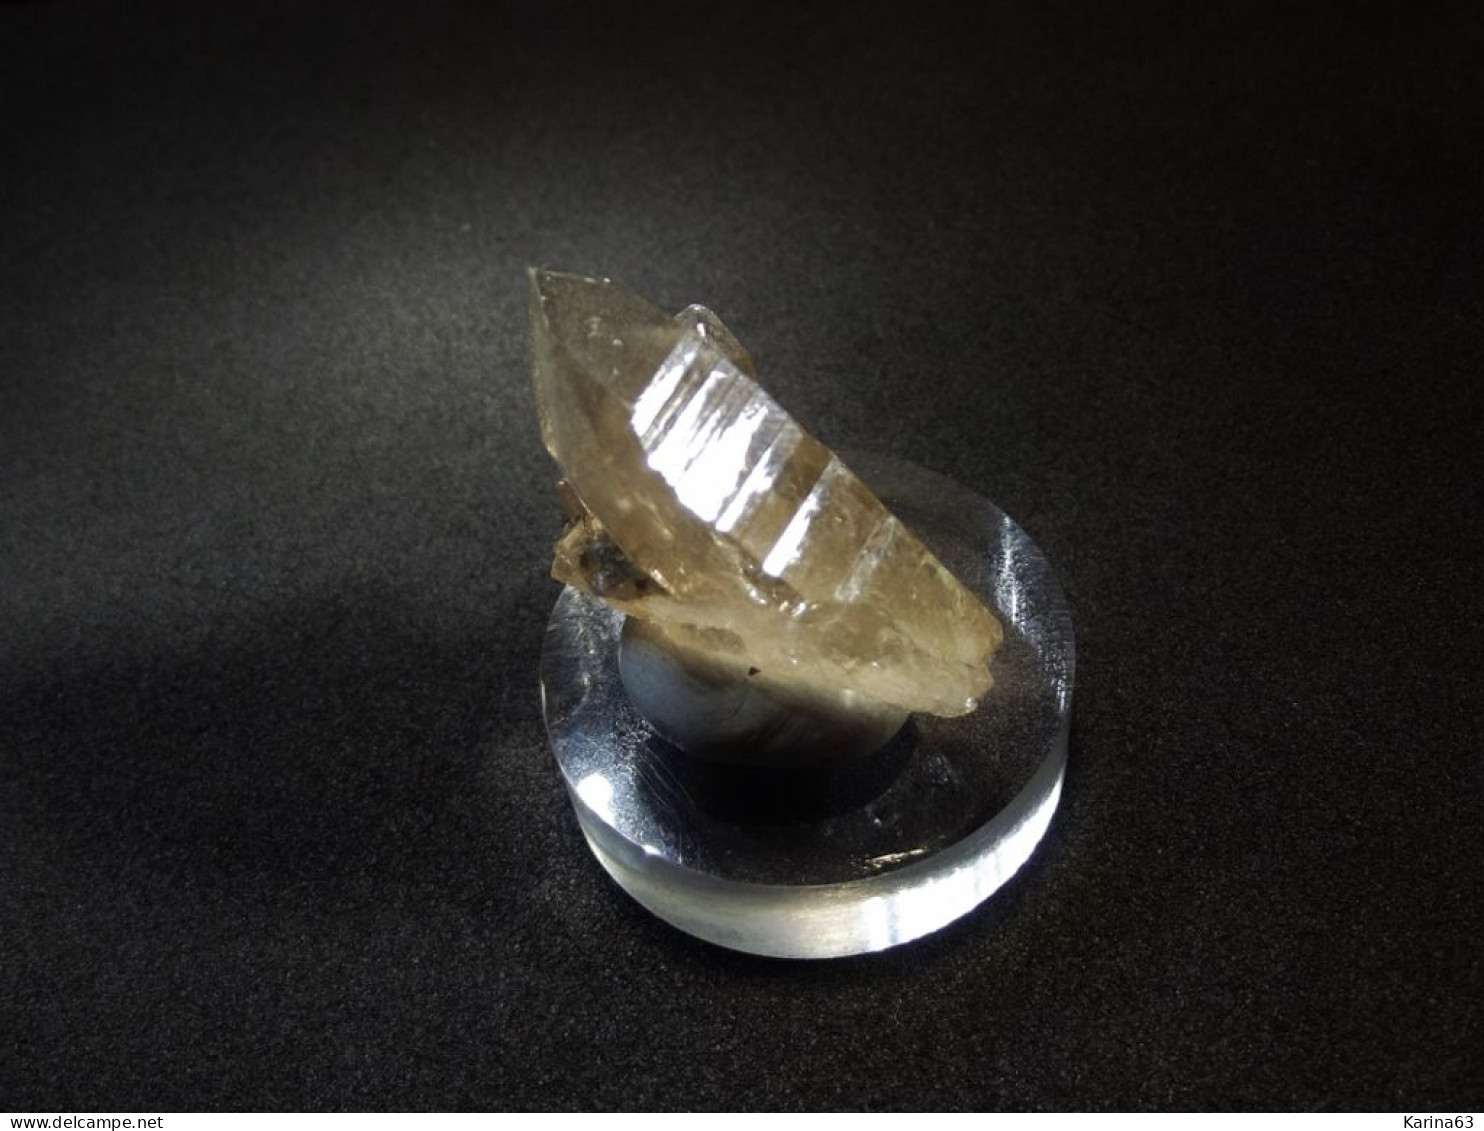 Smokey Quartz  (3 X 2 X 1.5 Cm )  Helsenhorn - Binntal - Switzerland - Minerali